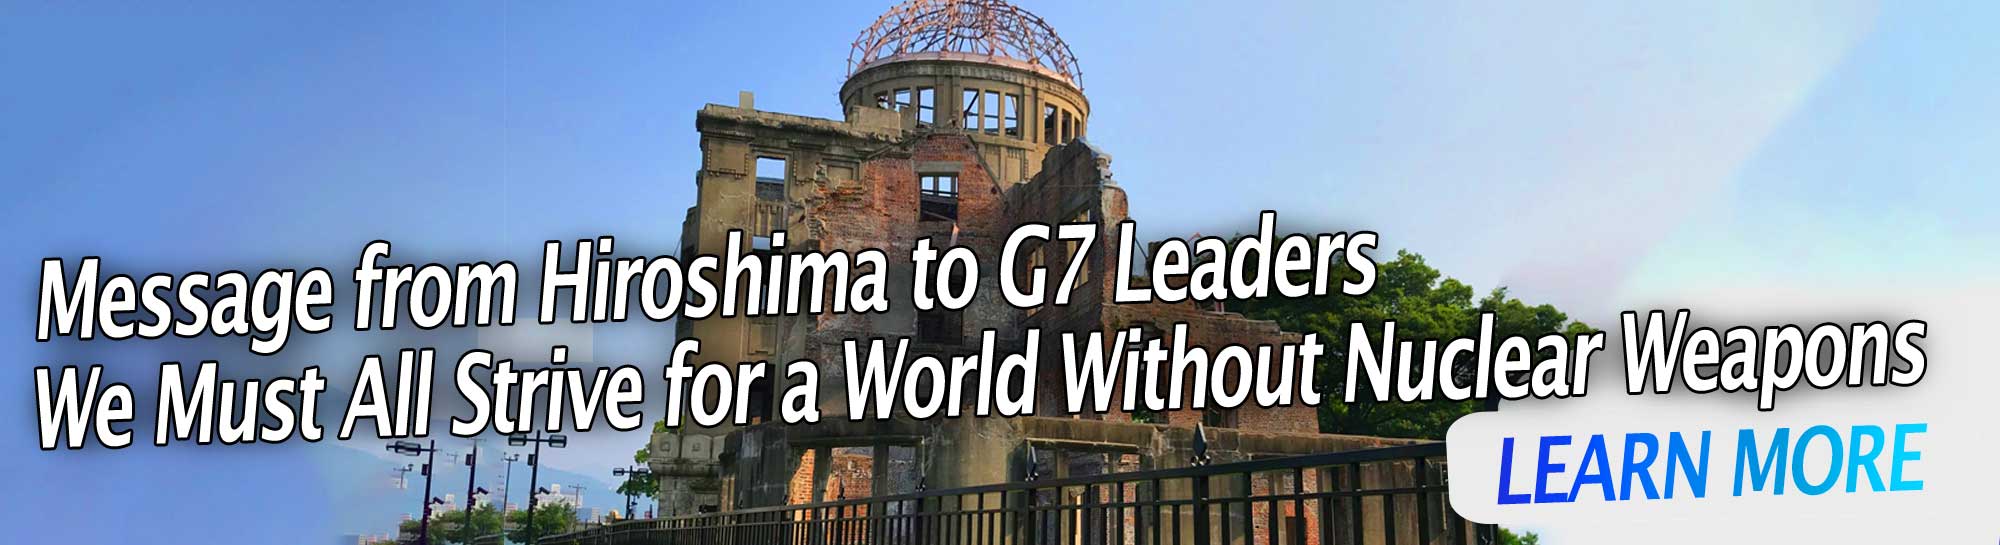 Послання з Хіросіми лідерам G7: ми всі повинні прагнути до світу без ядерної зброї